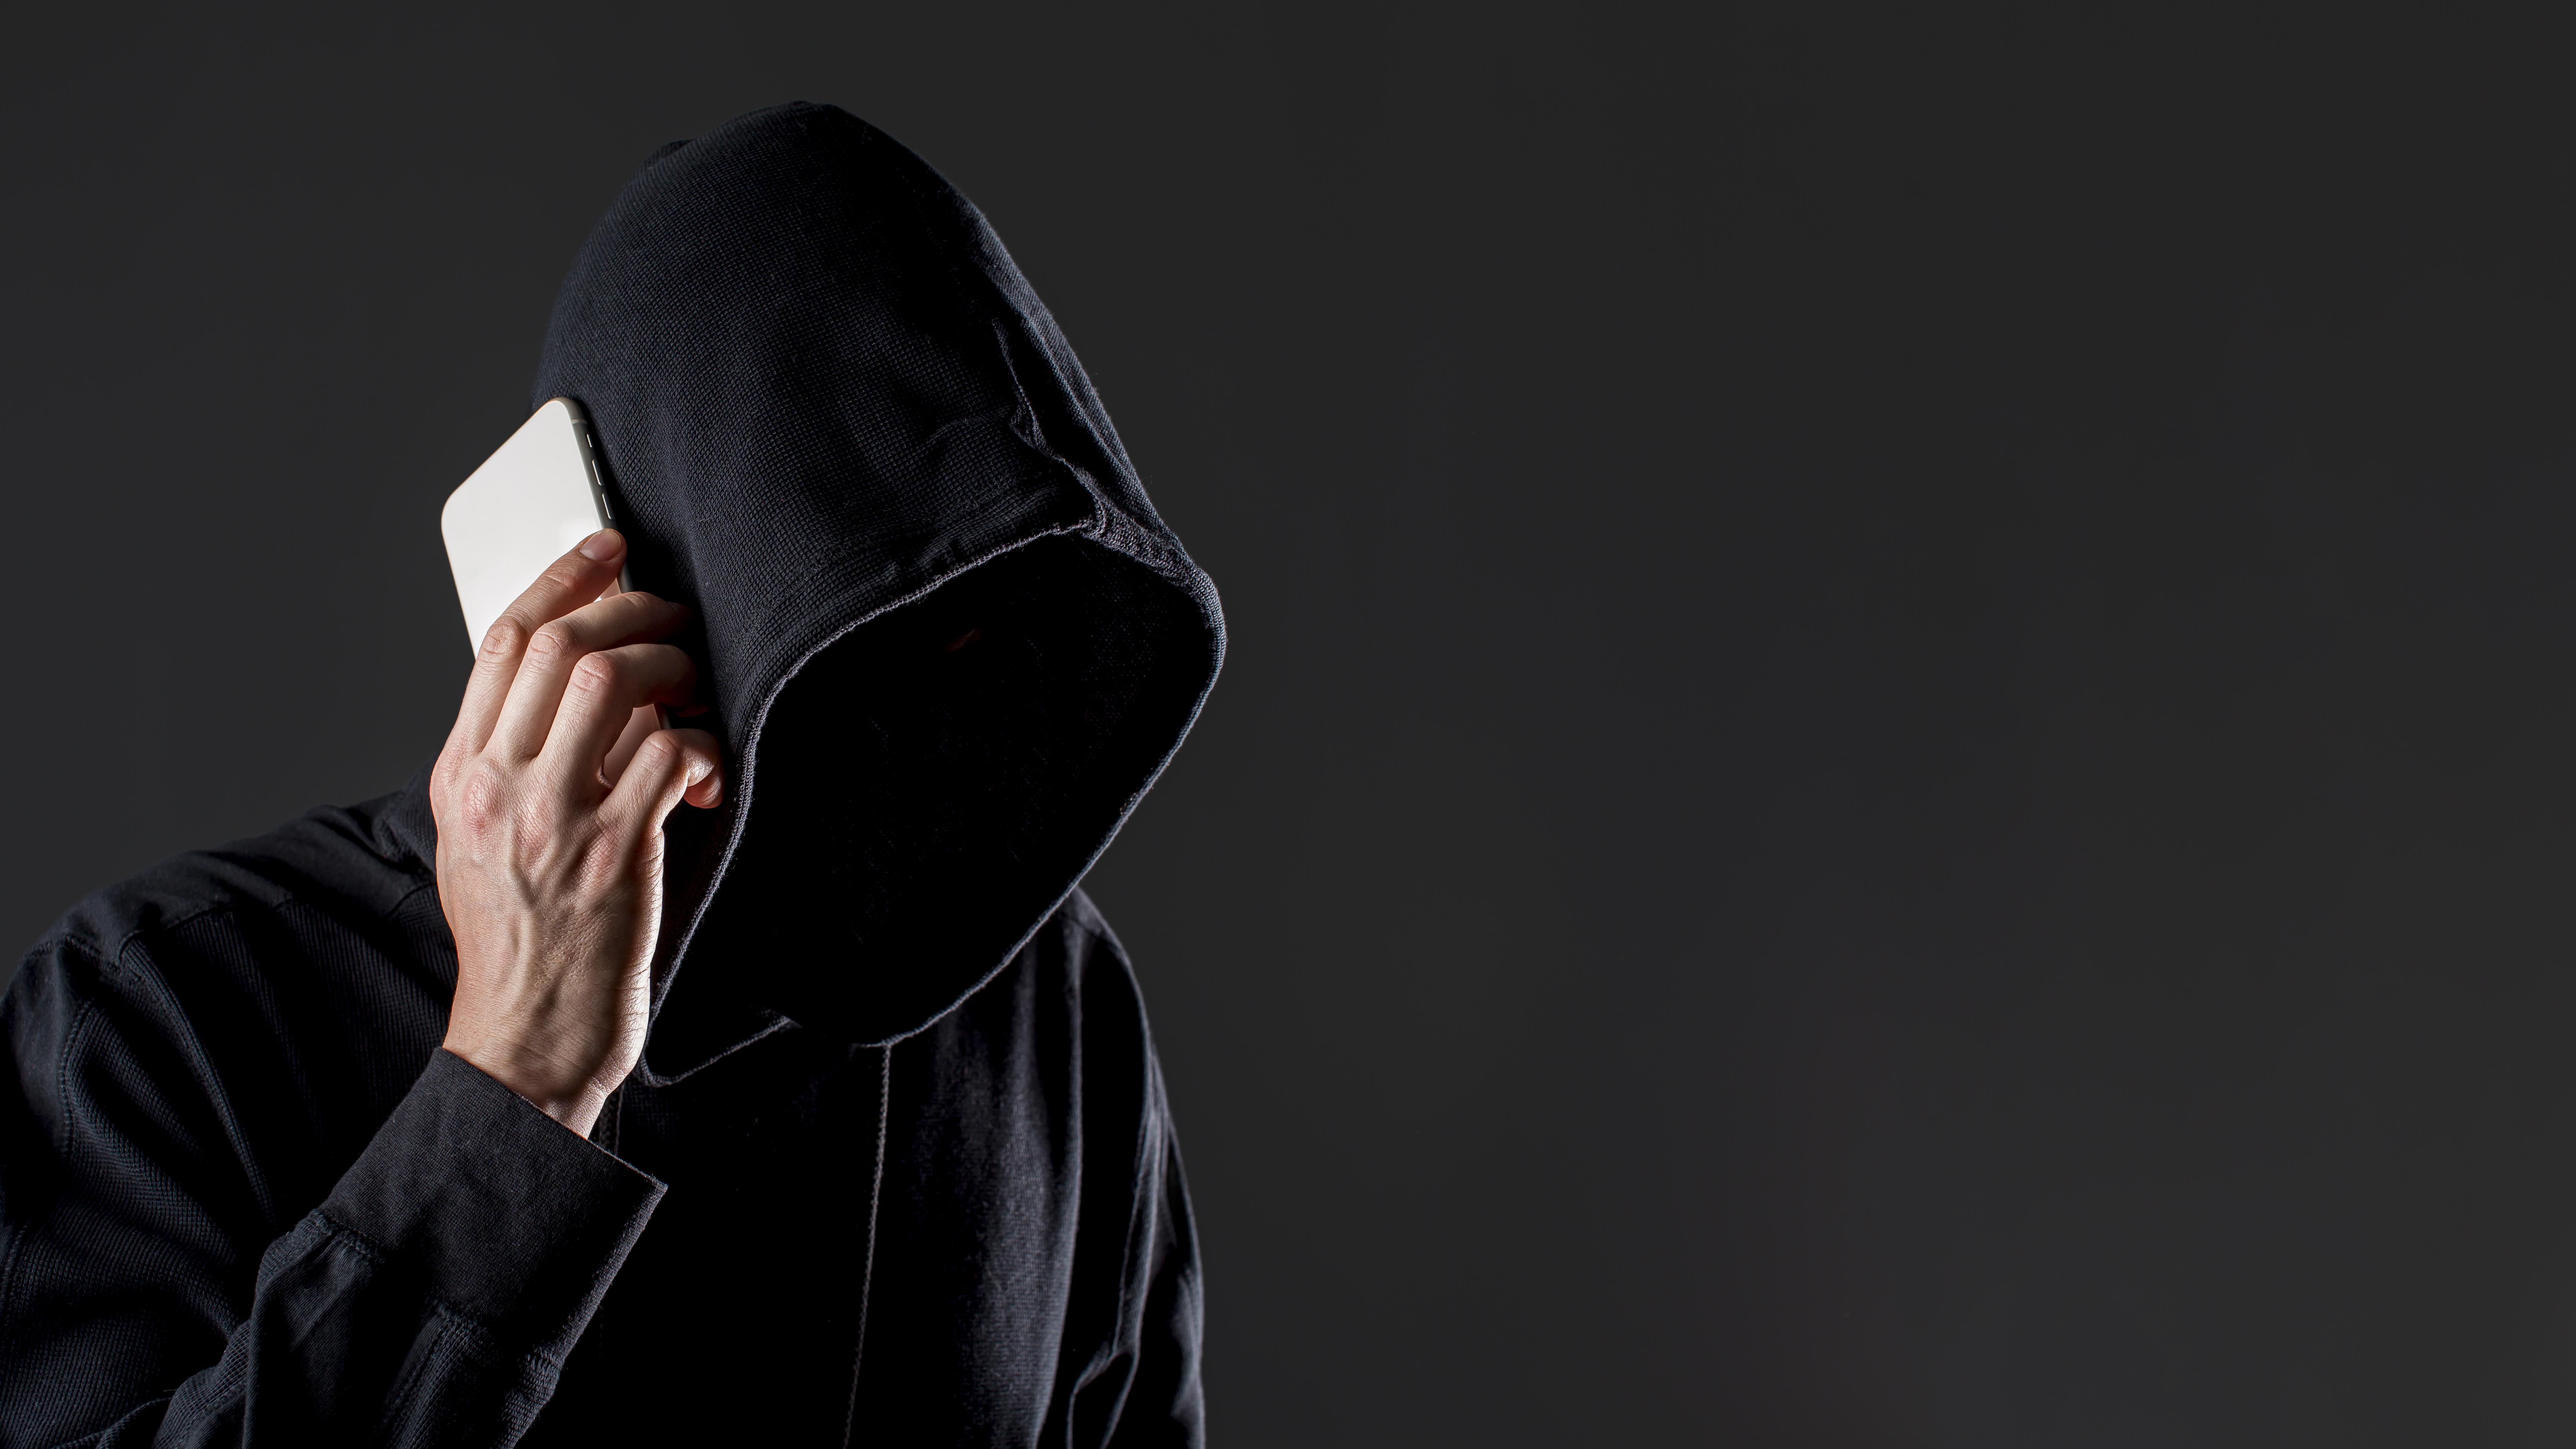 OIJ alerta por estafas con secuestros virtuales falsos